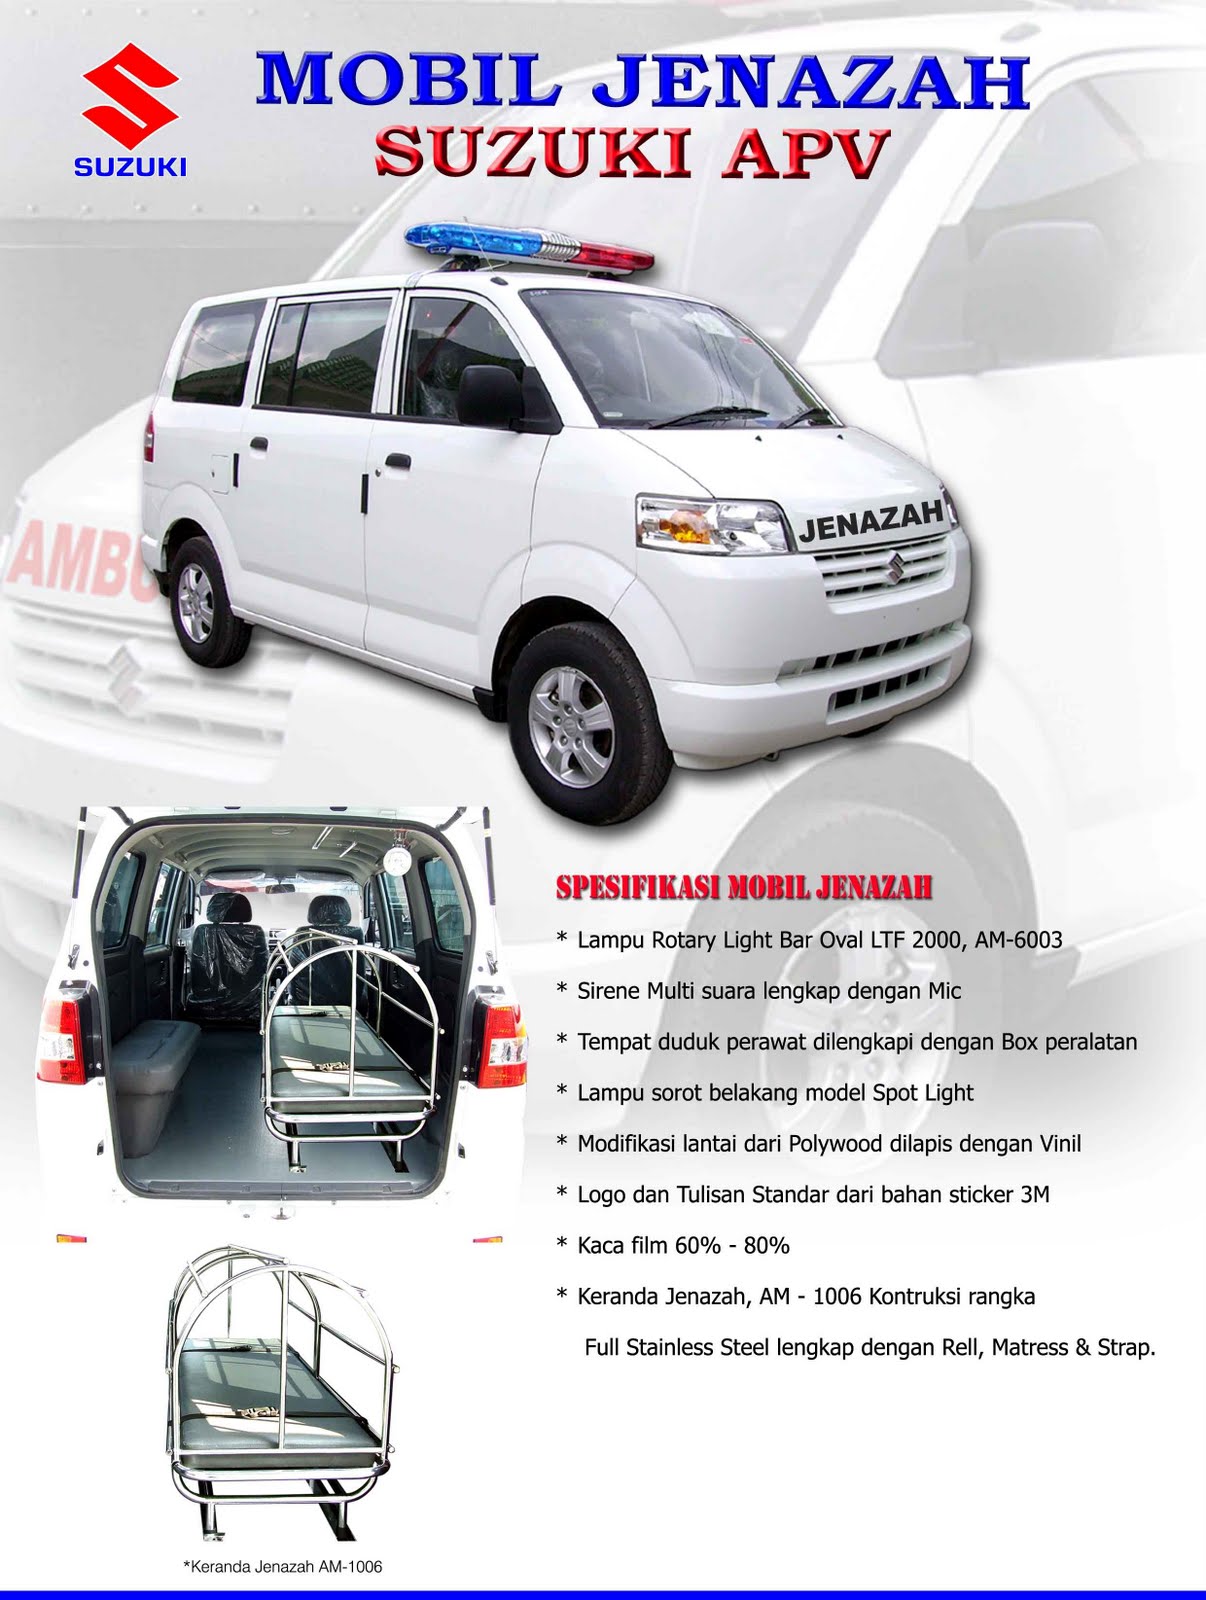 Jual Ambulance Suzuki Ambulance